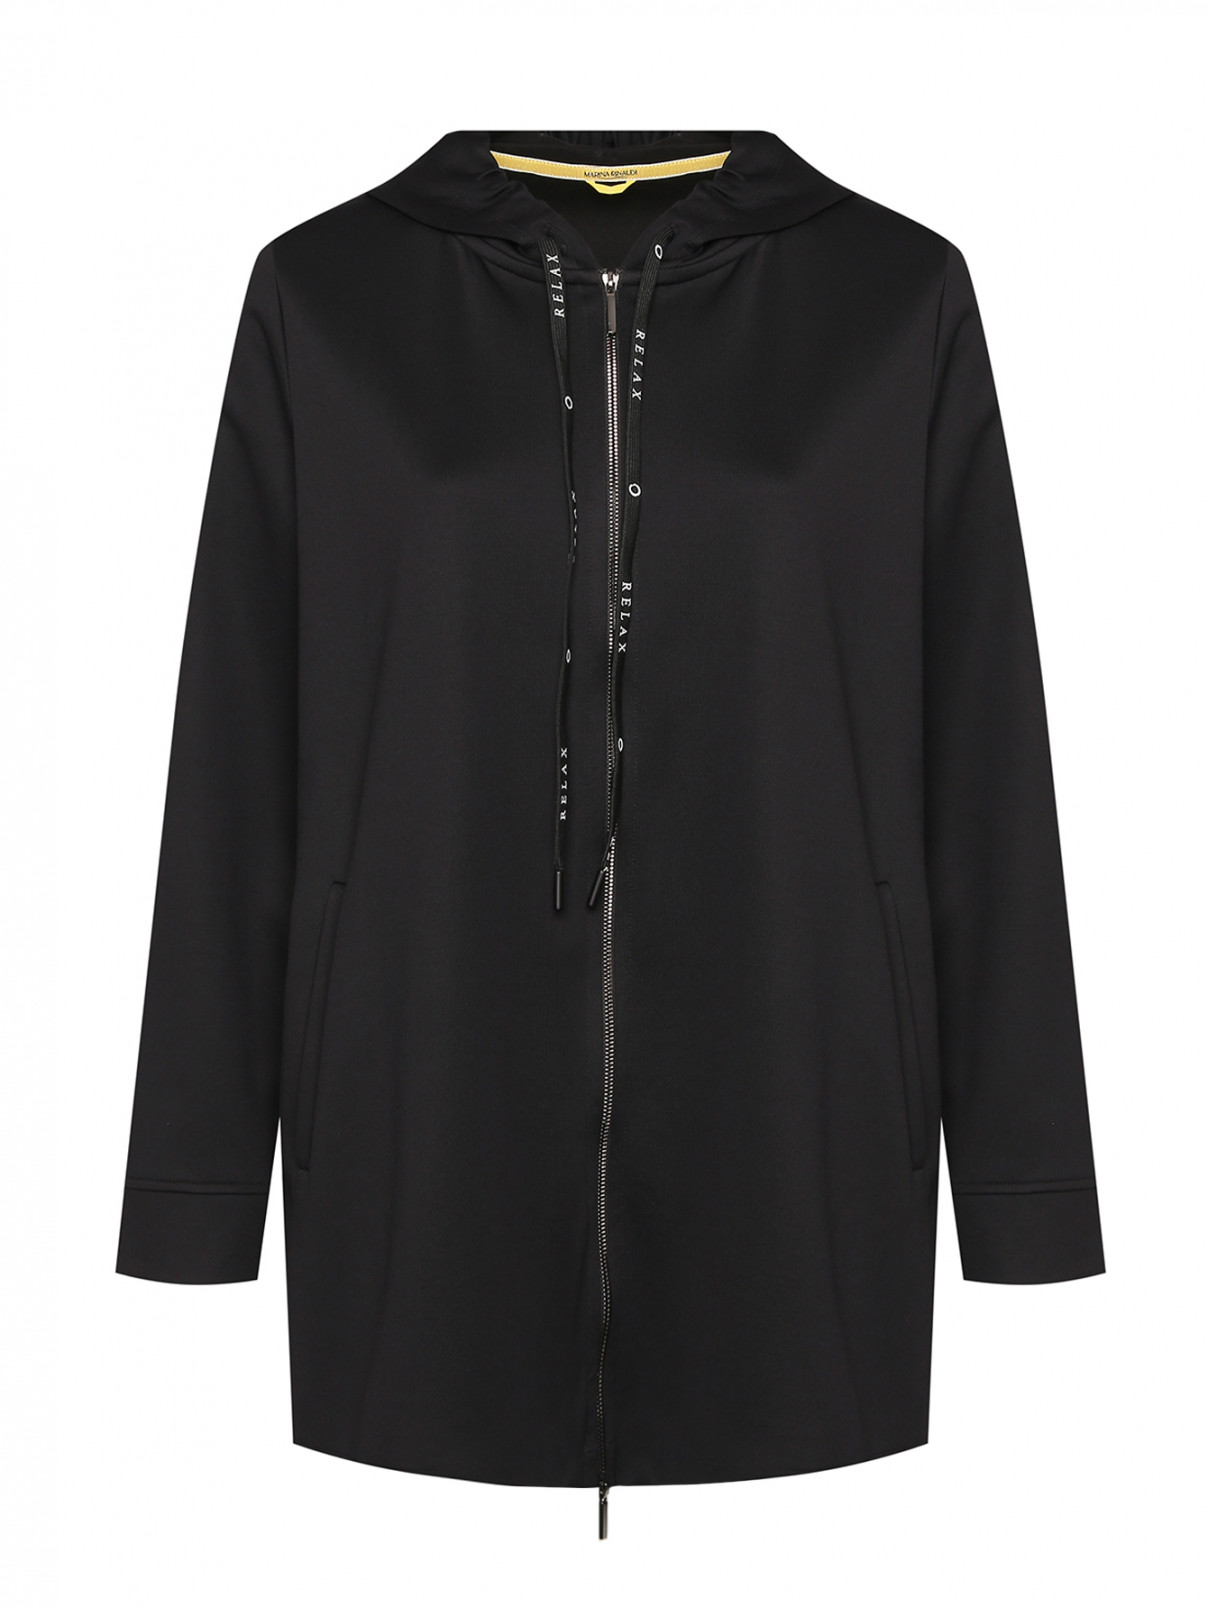 Трикотажная куртка на молнии с капюшоном Marina Rinaldi  –  Общий вид  – Цвет:  Черный